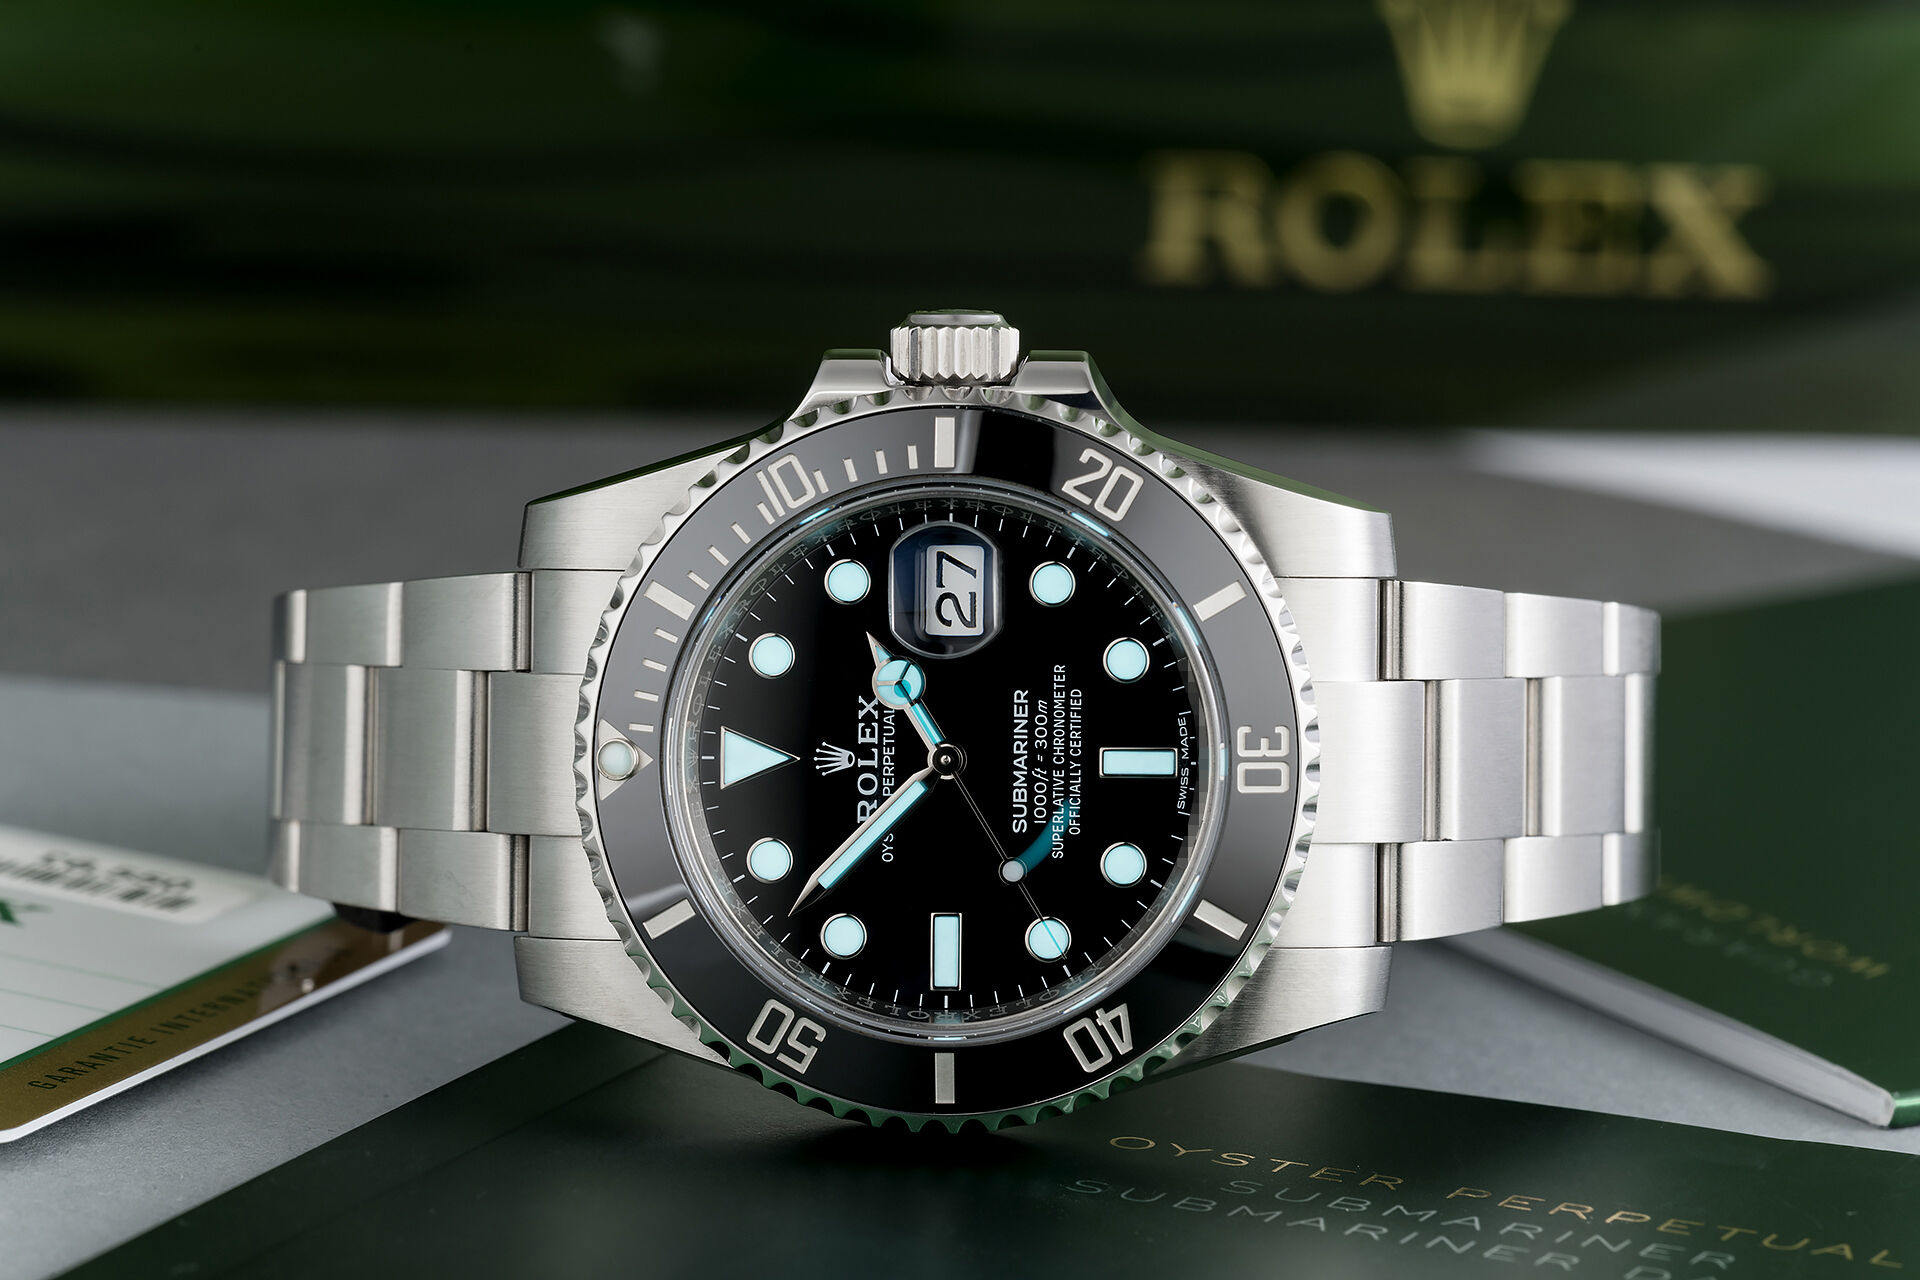 ref 116610LN | Under Rolex Warranty to 2024 | Rolex Submariner Date